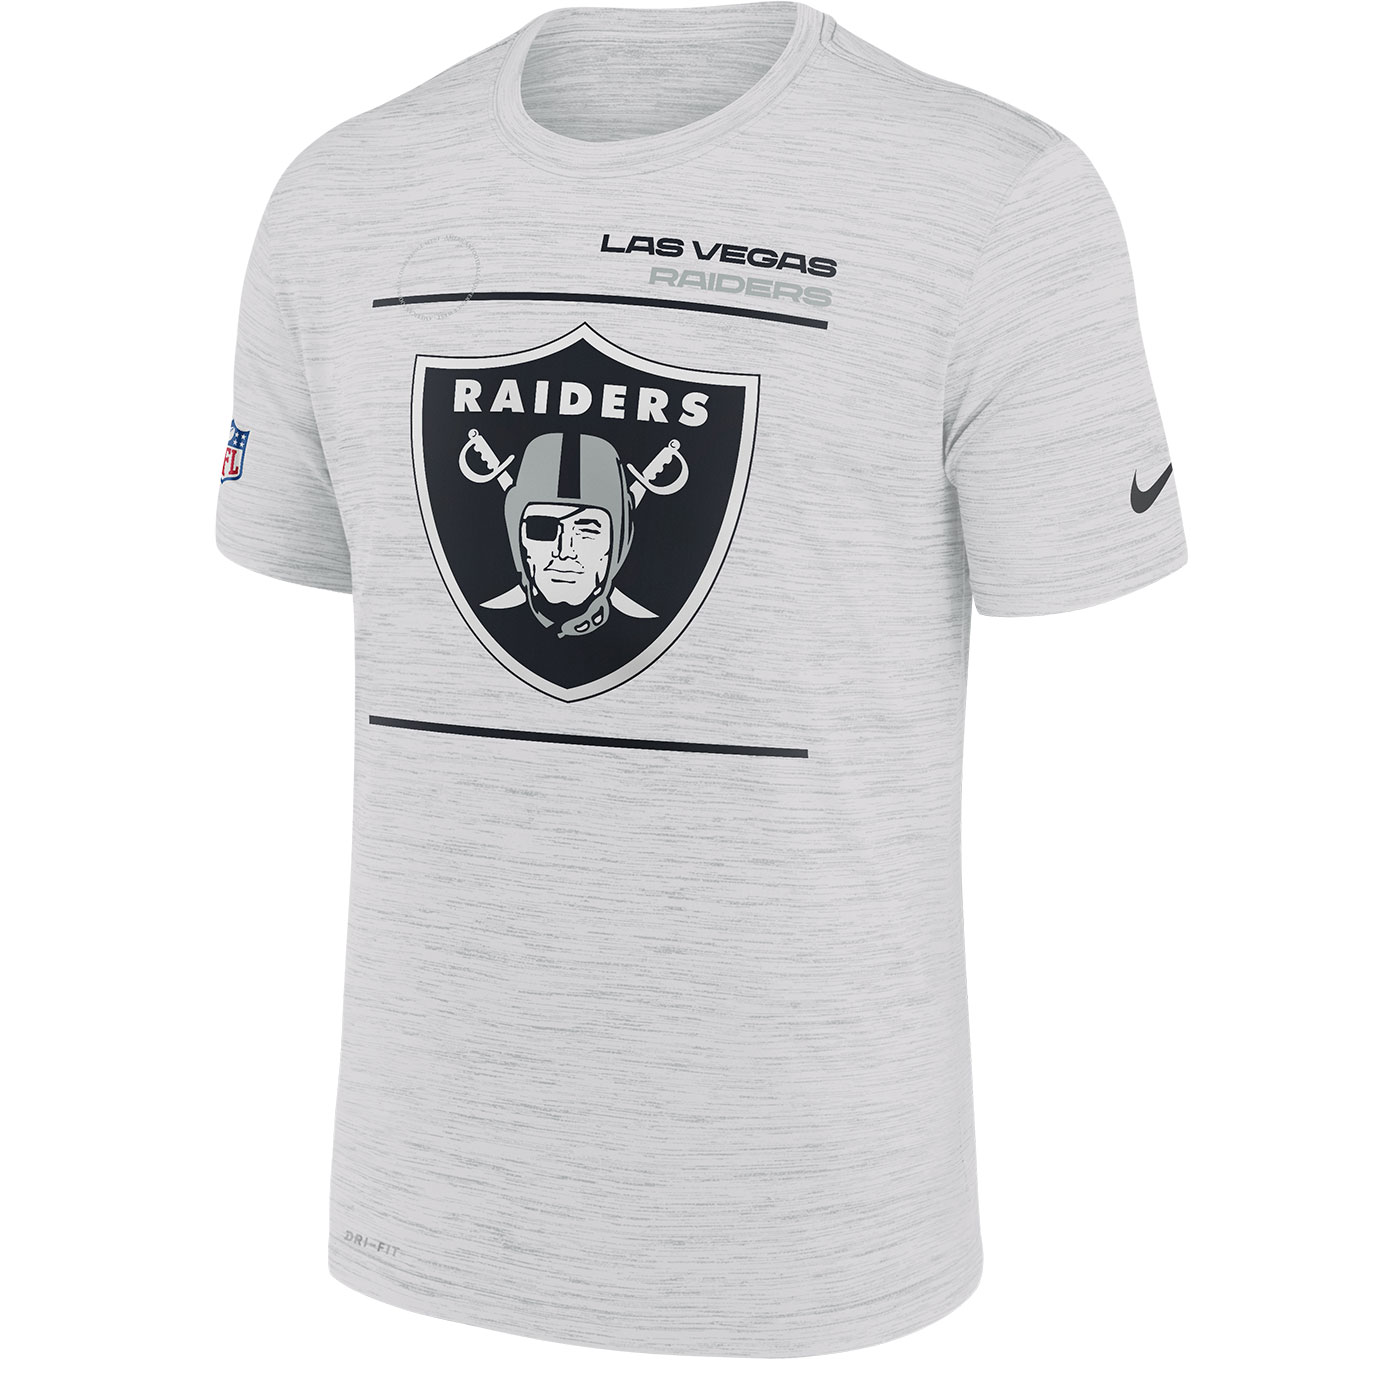 Nike Men's Las Vegas Raiders Sideline Team Issue T-Shirt - Black - M Each